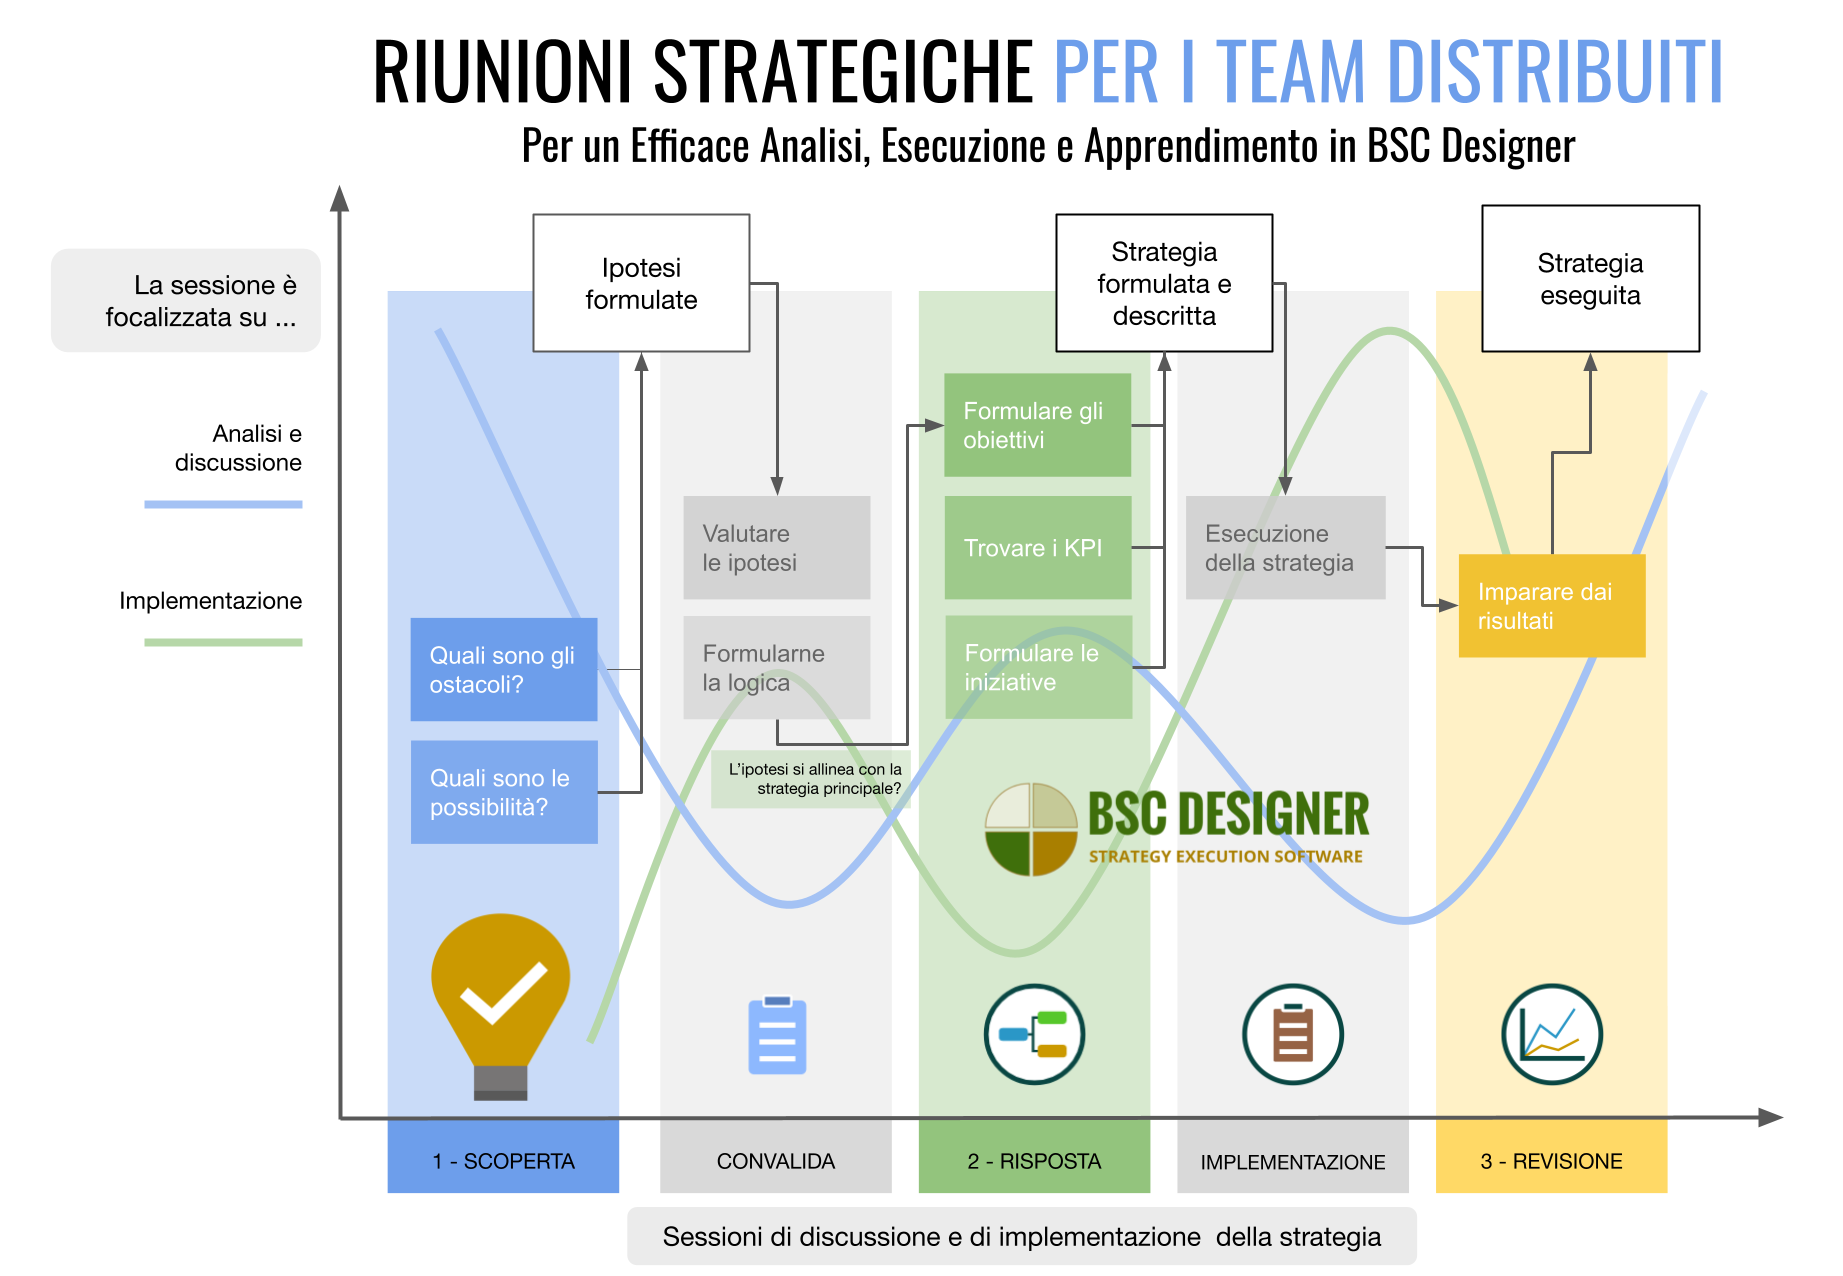 Tre tipi di Sessioni Strategiche per i Team Distribuiti